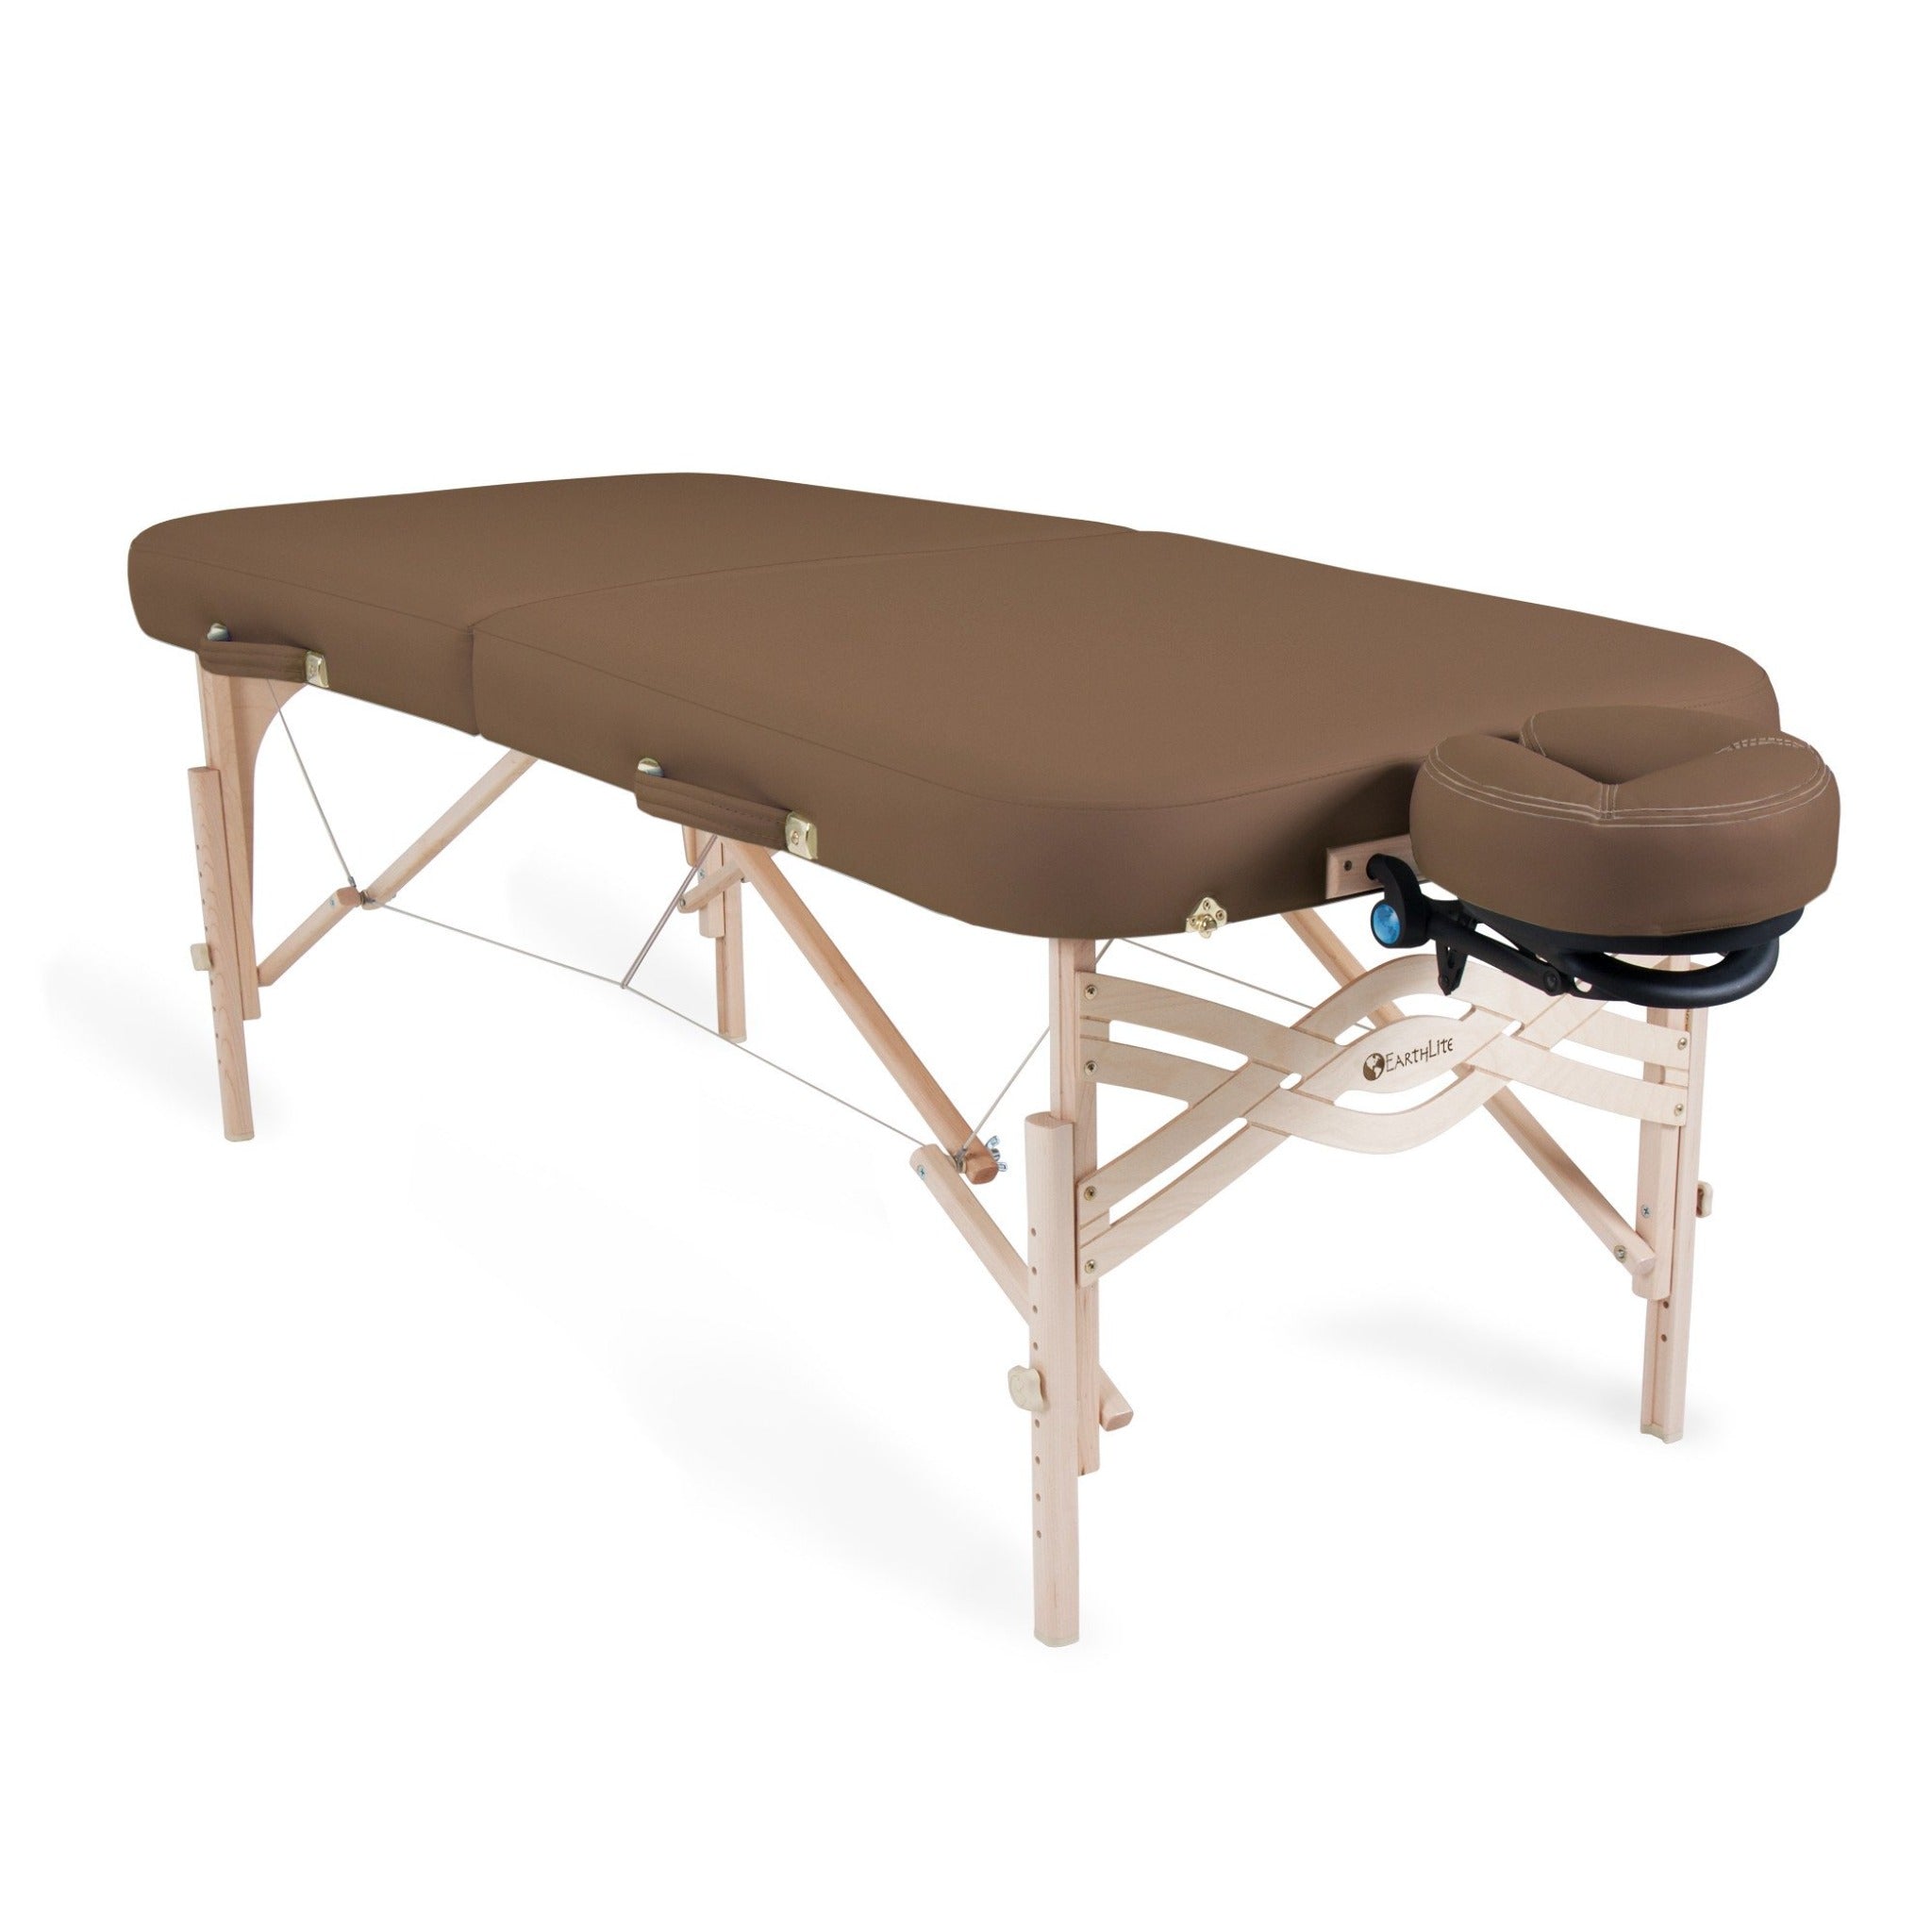 EarthLite Spirit Massage Table 